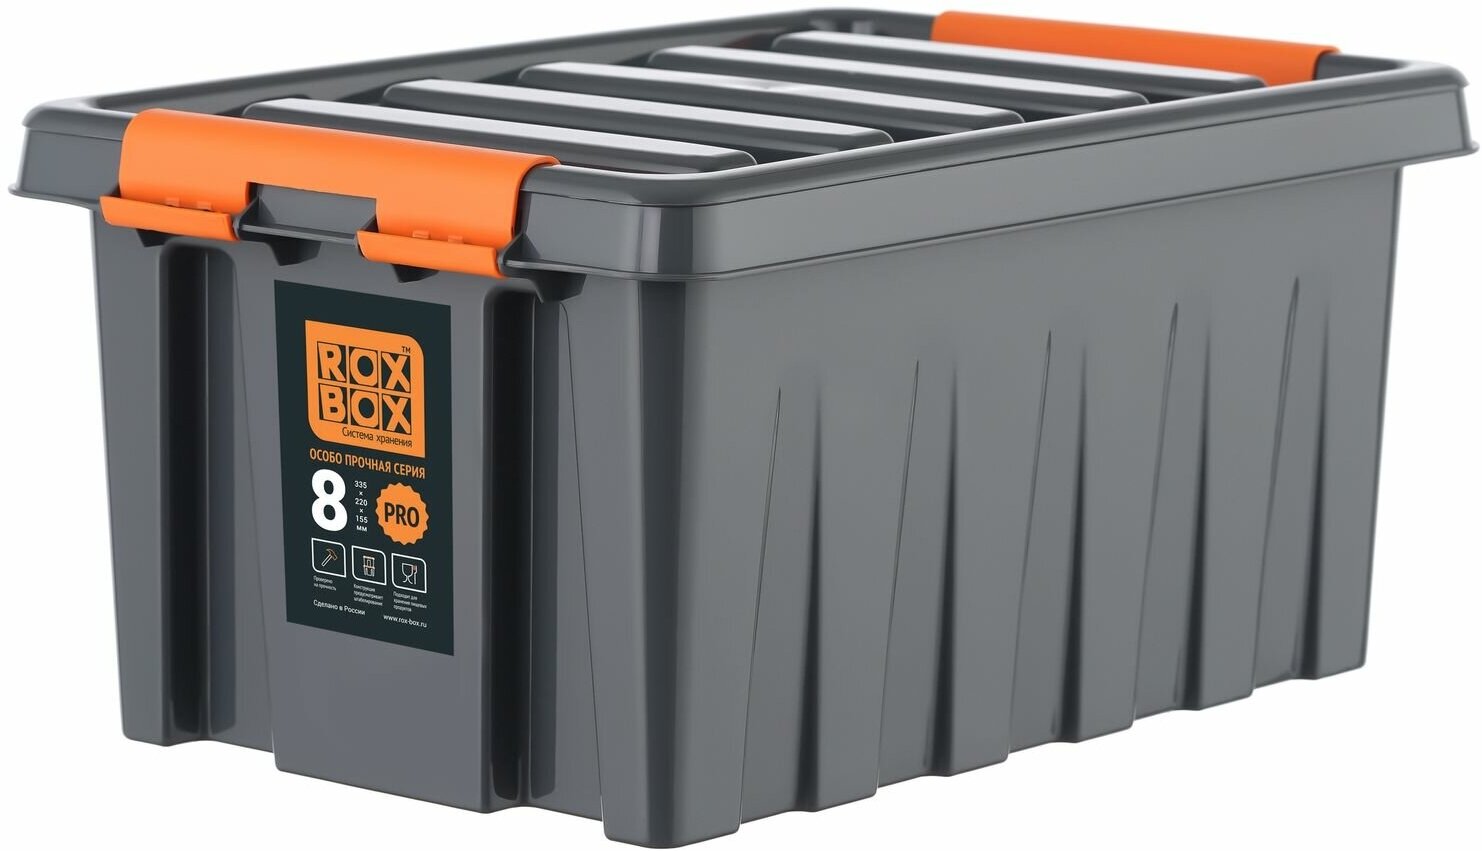 Ящик Roxor Consumer с крышкой особопрочный 8 серия Rox Box Pro, антрацитовый